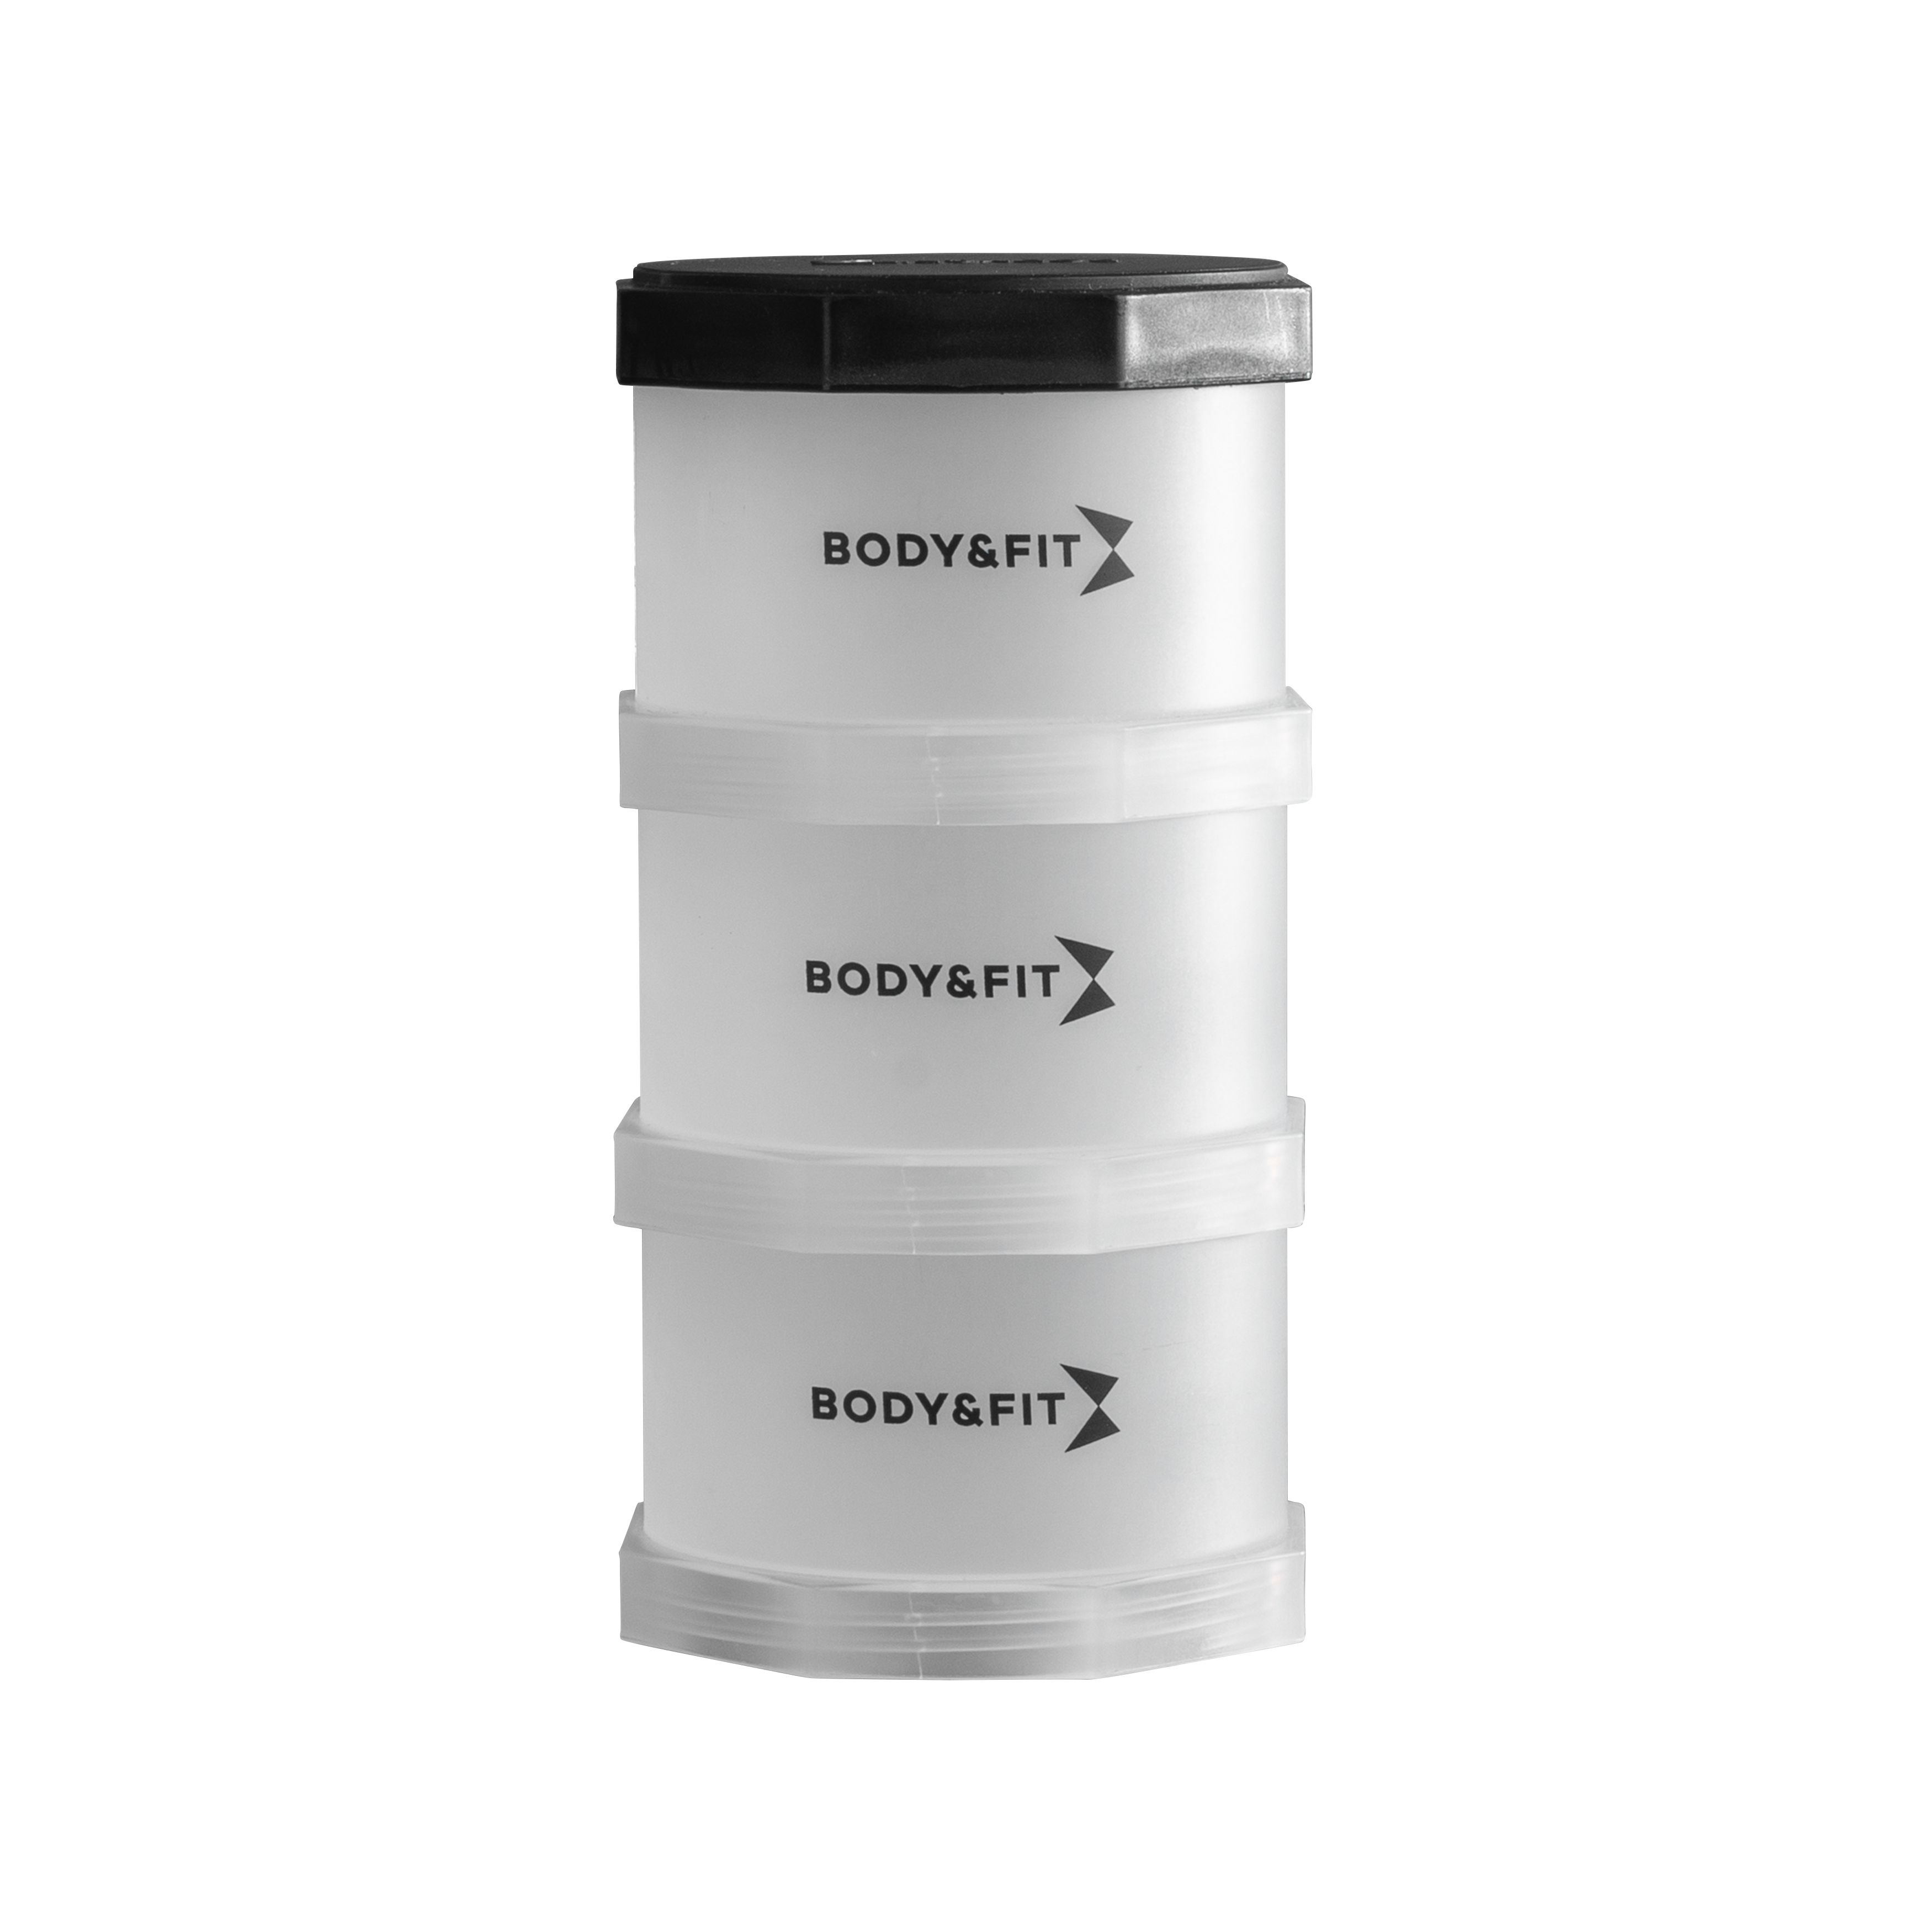 Body & Fit Powder Container - Toren voor bewaren van Poeder en Supplementen - 3 vakken - BPA-Vrij